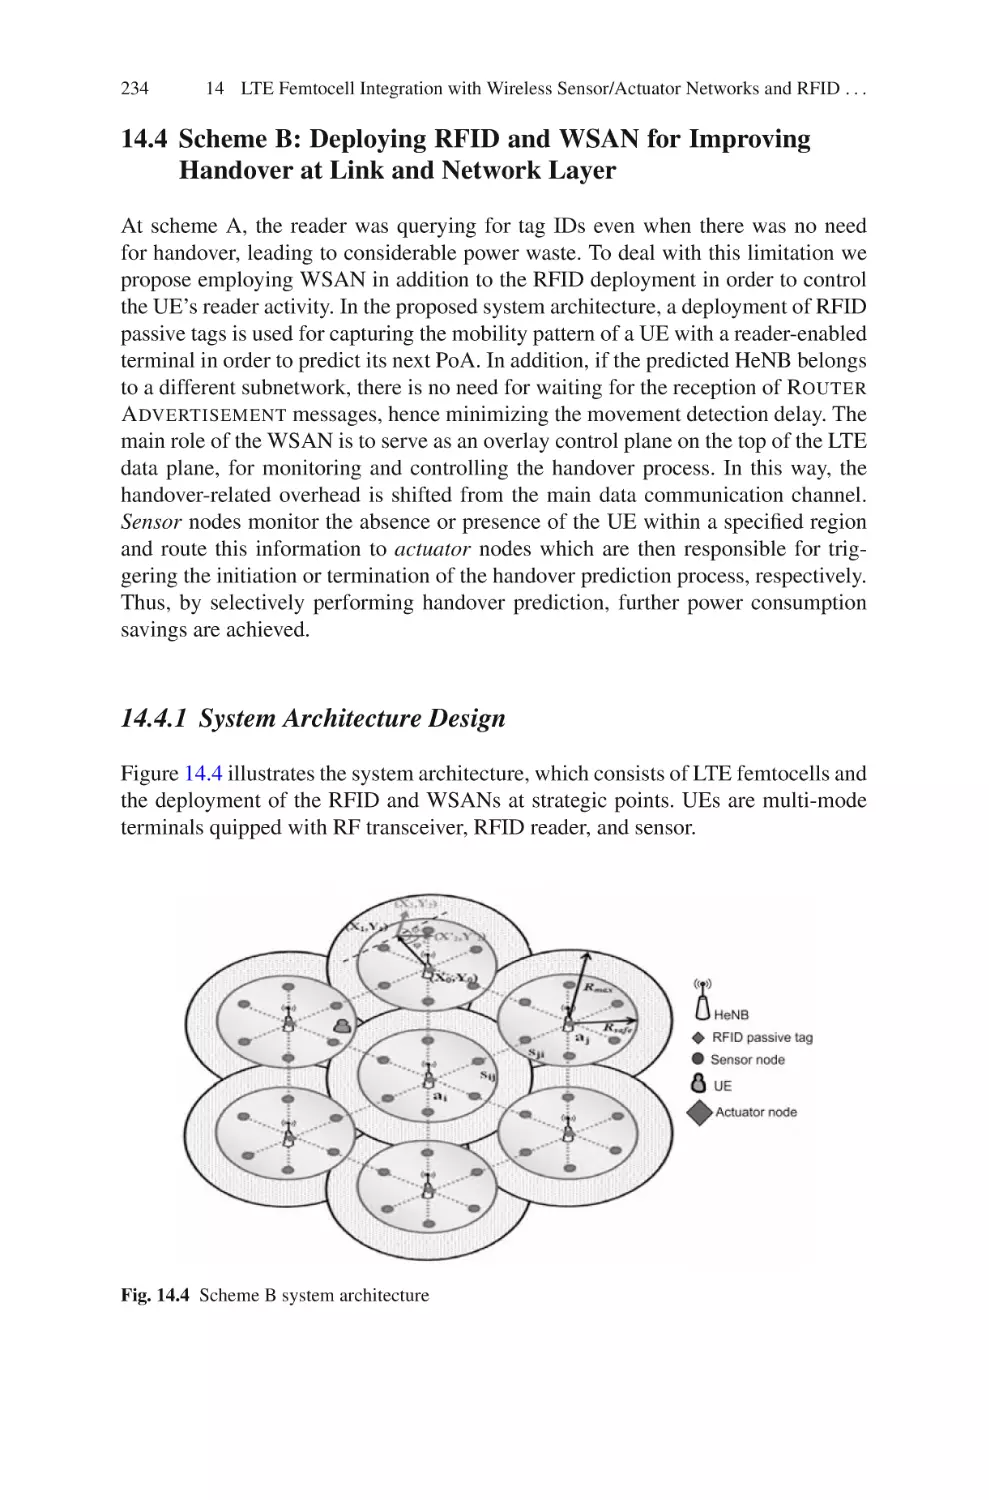 14.4  Scheme B
14.4.1  System Architecture Design